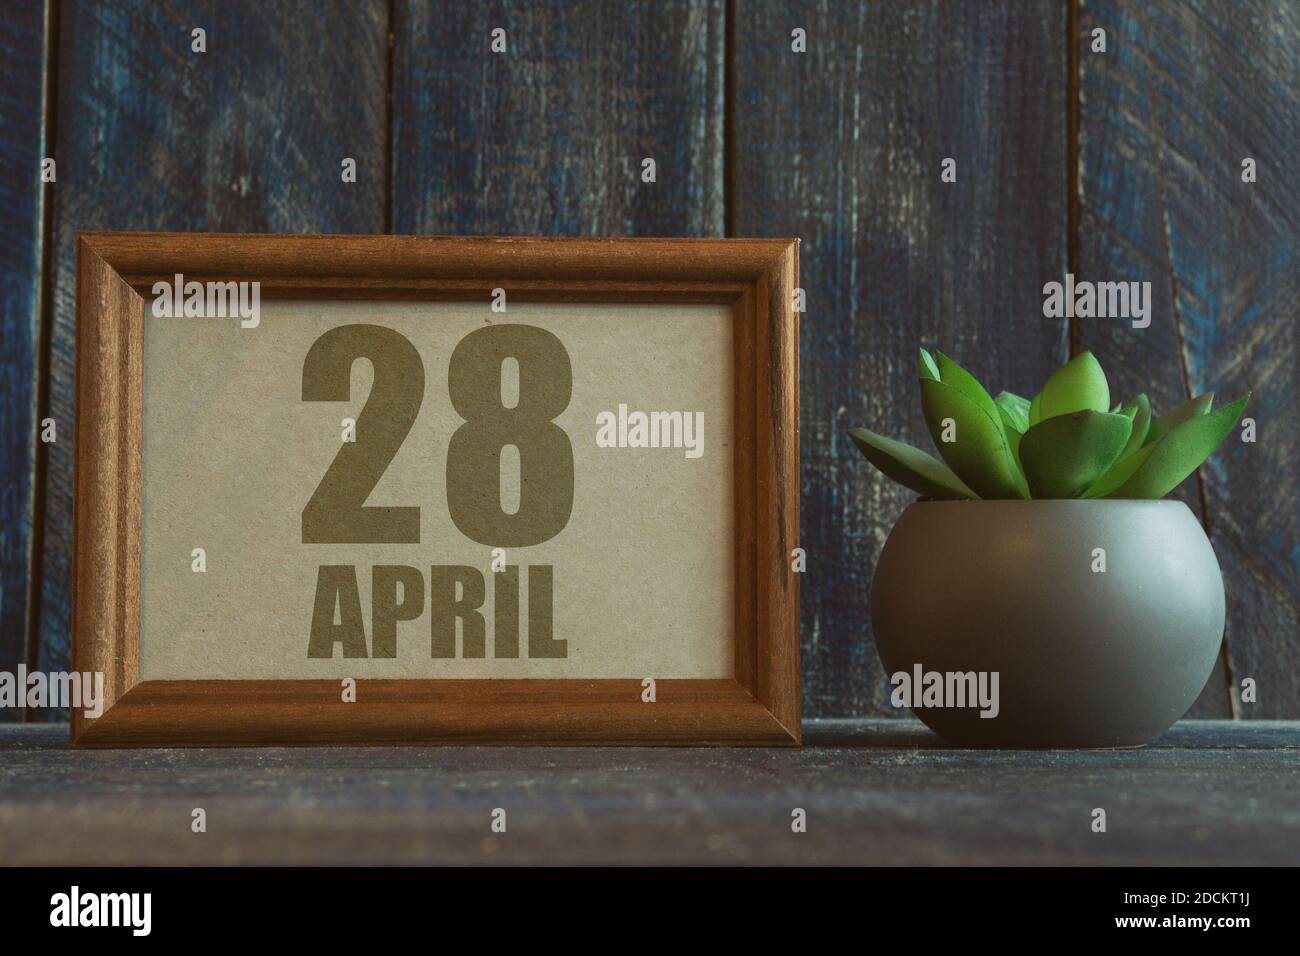 28 avril. Jour 28 du mois, date dans le cadre à côté de succulent sur fond de bois printemps mois, jour de l'année concept. Banque D'Images